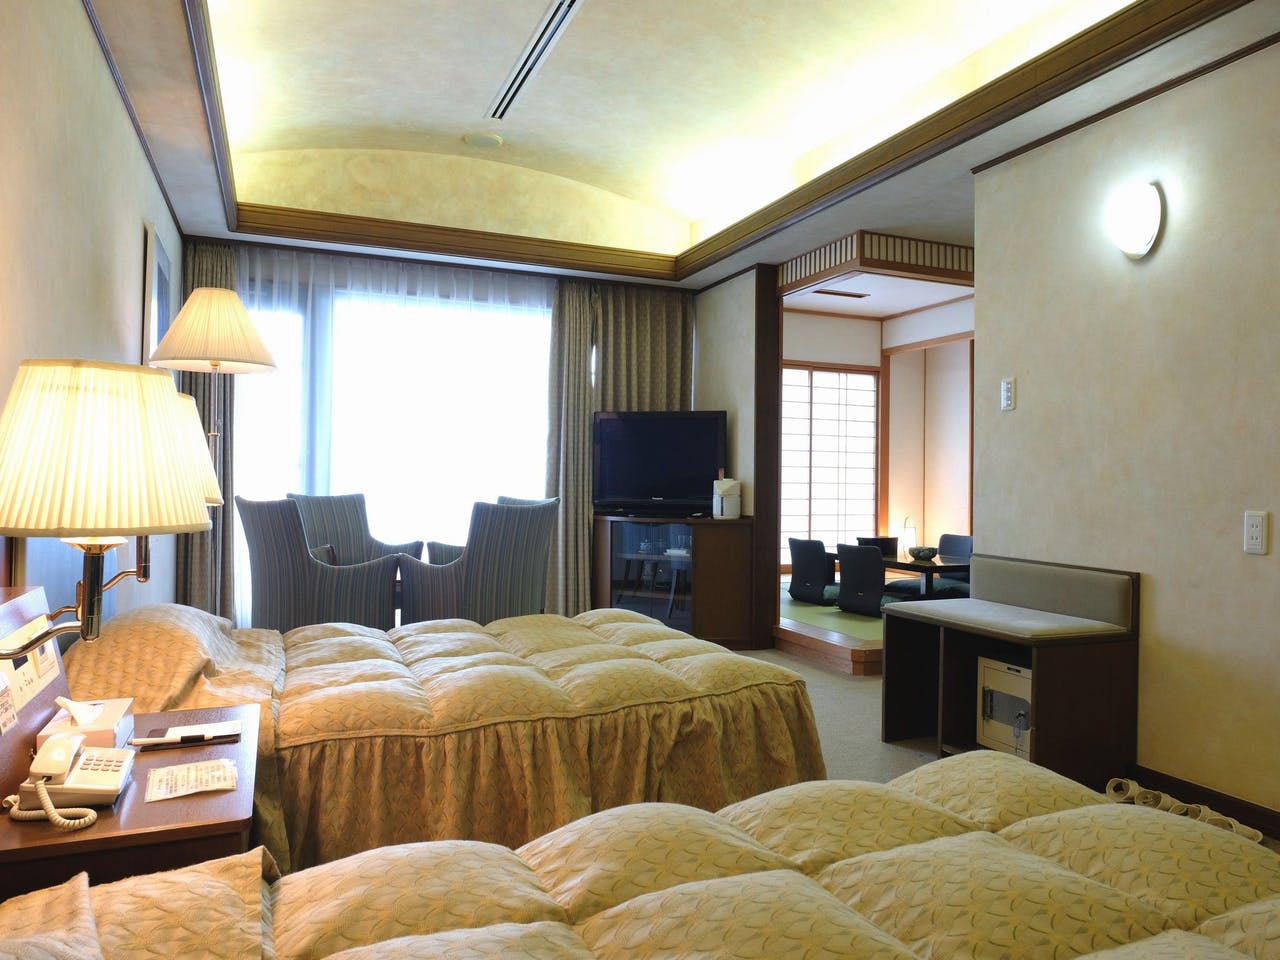 โรงแรม เกาะชิโกกุ ห้องแบบกึ่งญี่ปุ่นกึ่งตะวันตก Western Japanese Room